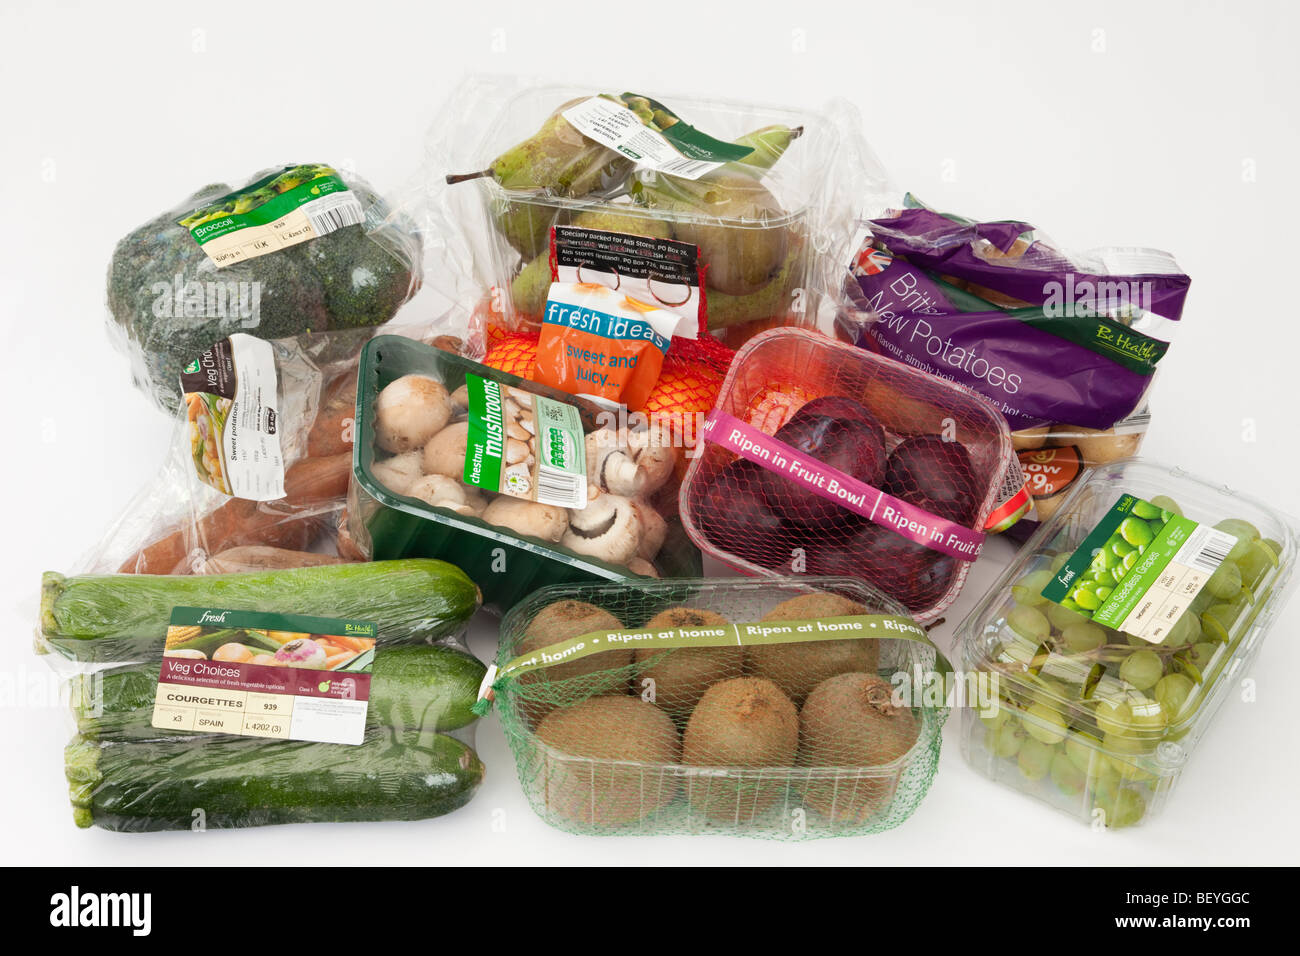 Auswahl von Obst und Gemüse in Einzel verpackt - Kunststoff Verpackung aus einem Supermarkt. England Großbritannien Großbritannien Stockfoto